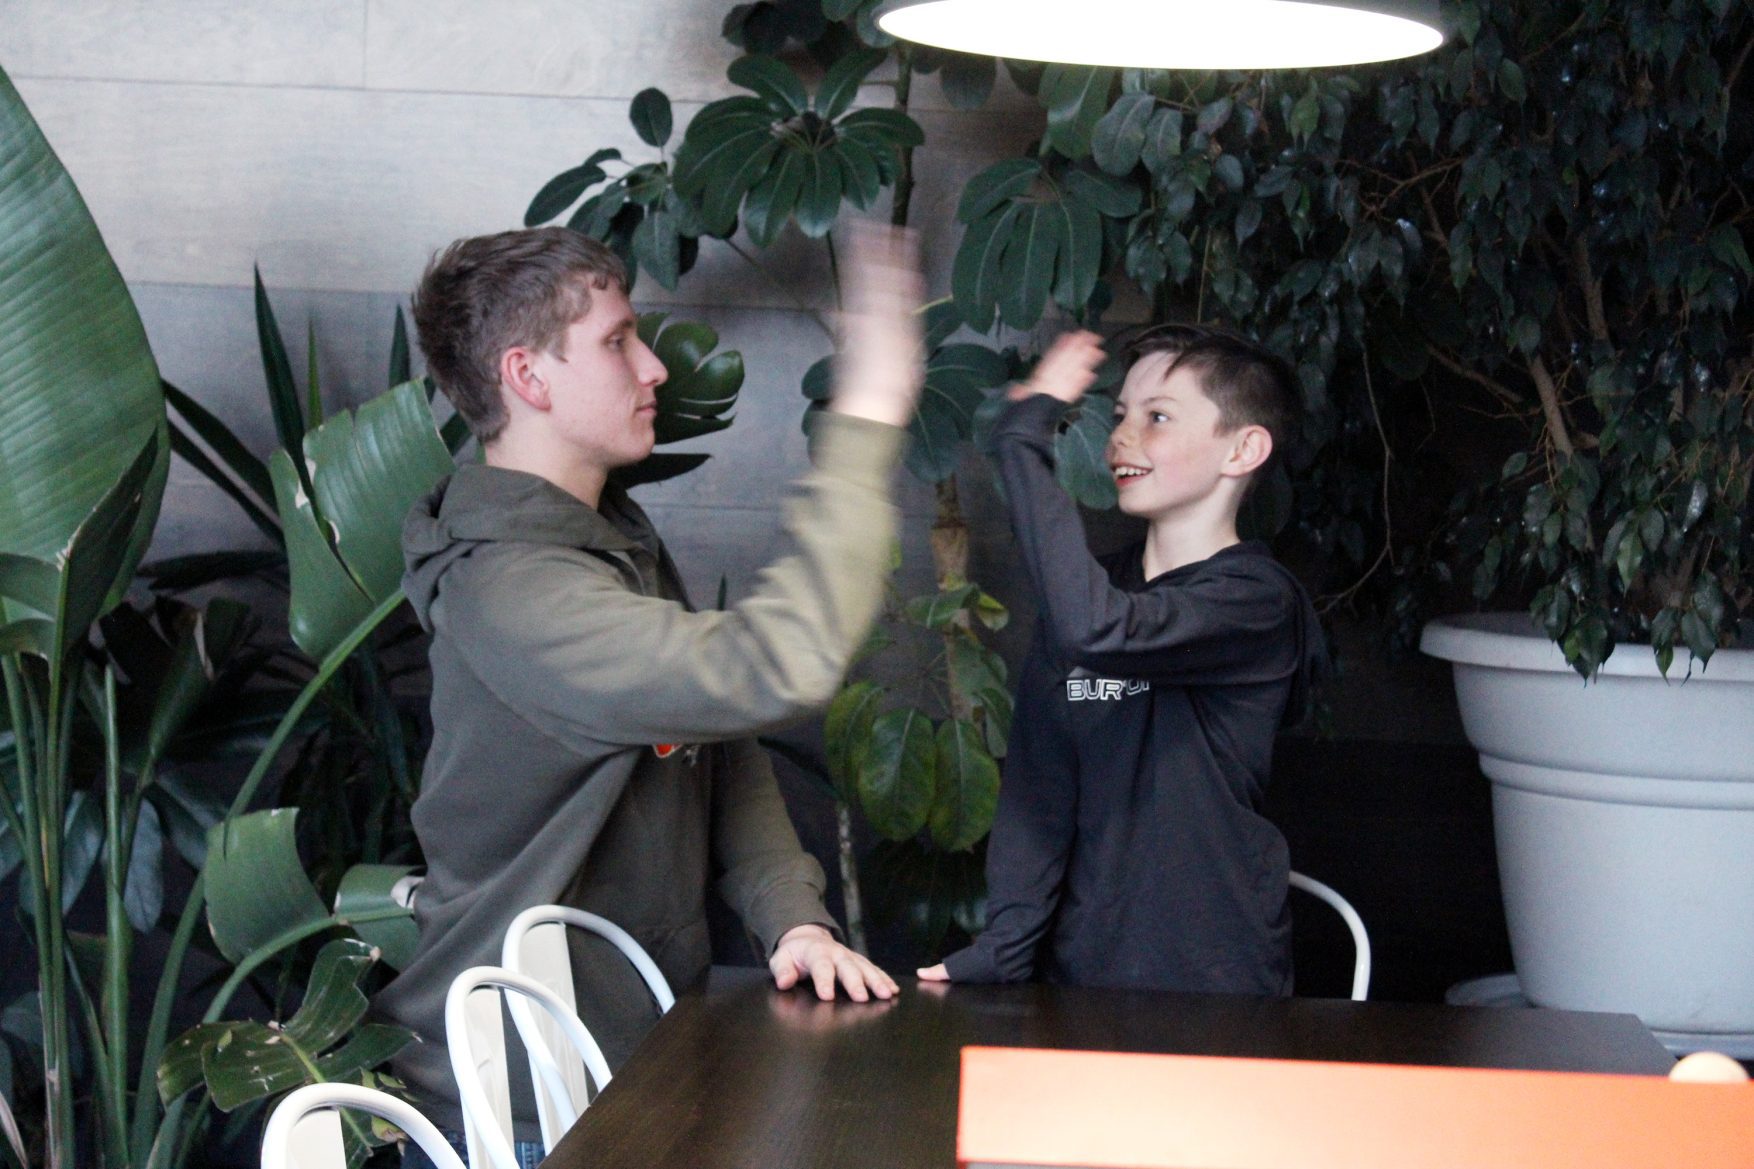 Terran Bursch and Cullen high-five each other